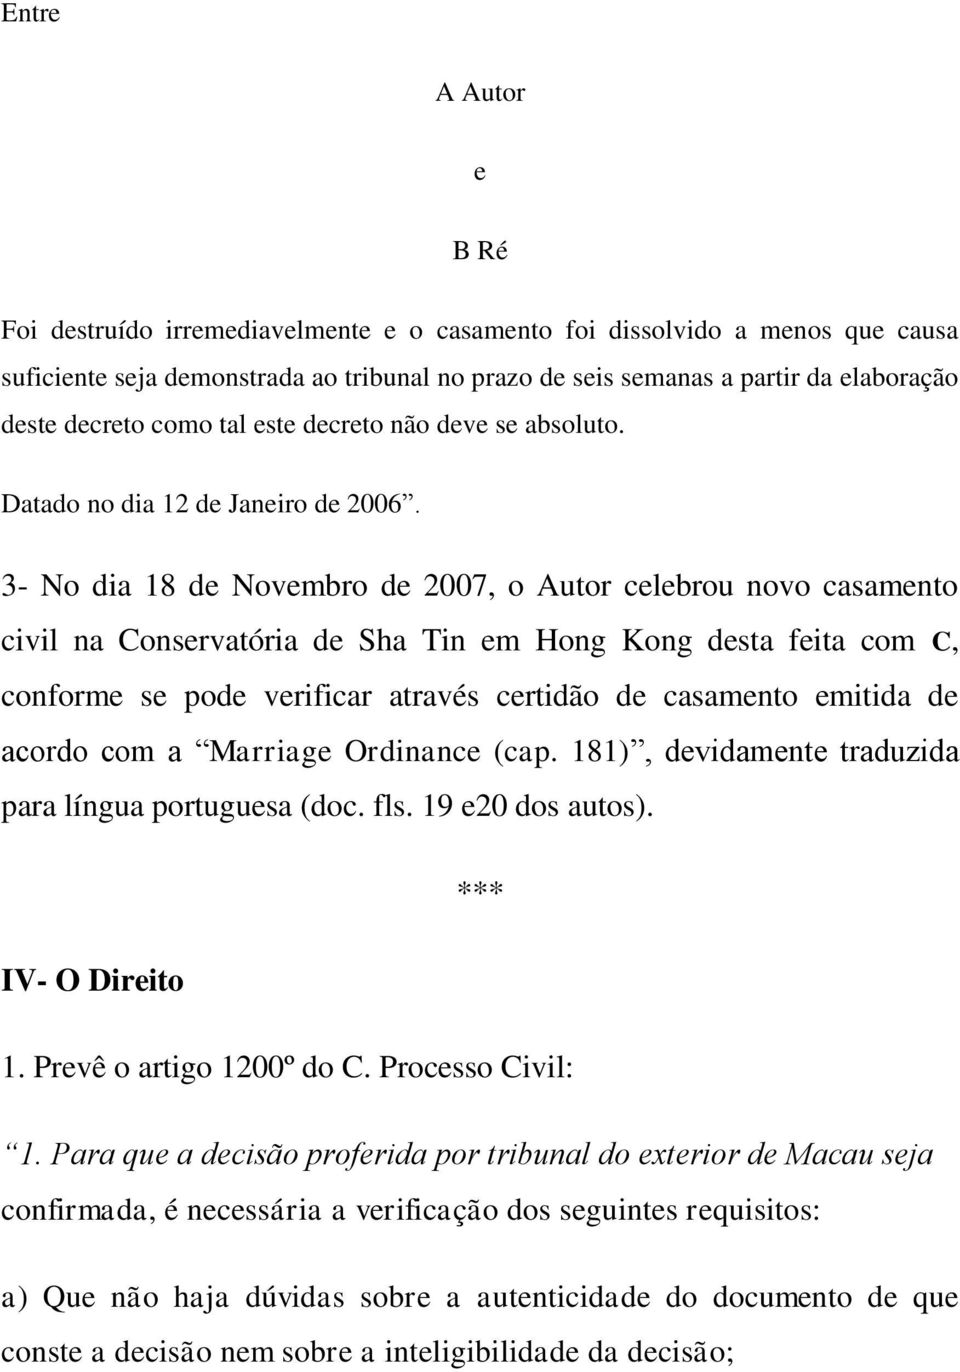 3- No dia 18 de Novembro de 2007, o Autor celebrou novo casamento civil na Conservatória de Sha Tin em Hong Kong desta feita com C, conforme se pode verificar através certidão de casamento emitida de